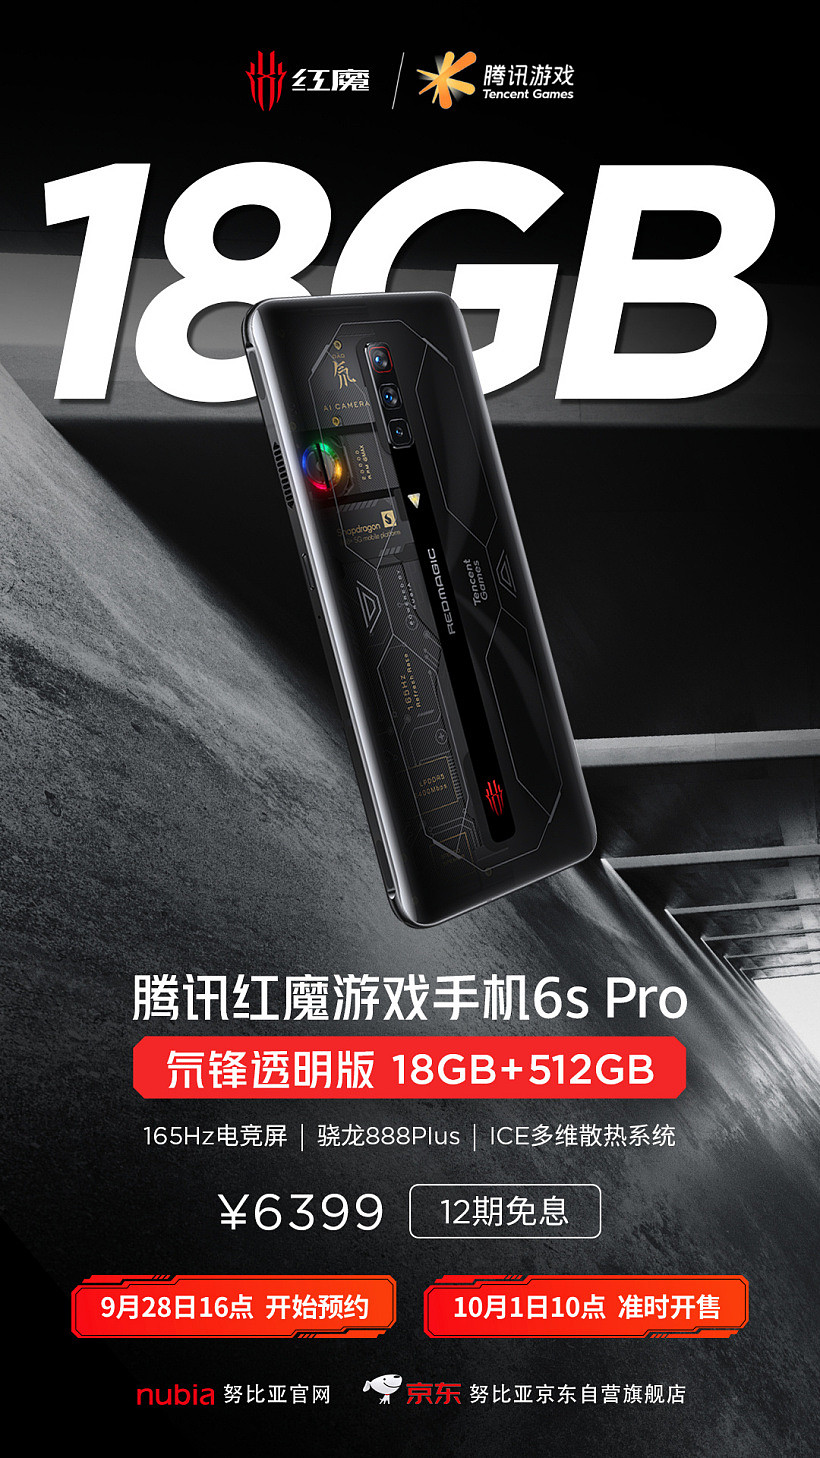 6399 元，18GB 运存的红魔游戏手机 6S Pro 氘锋透明版预售 - 1